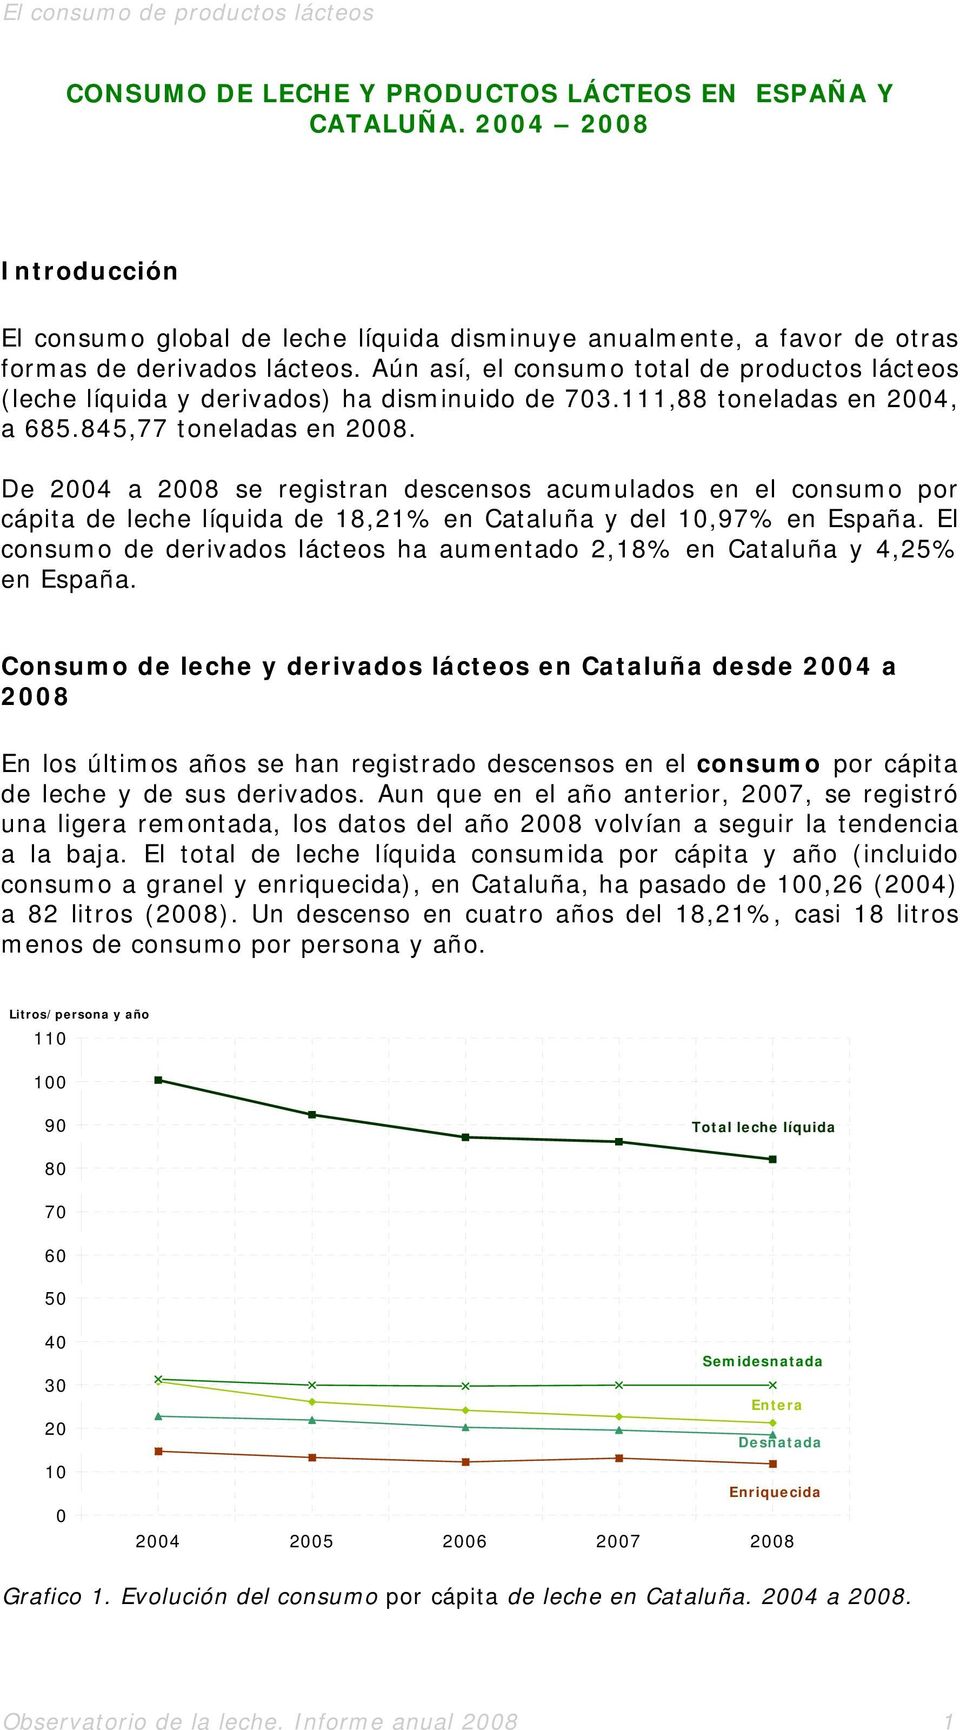 De 24 a 28 se registran descensos acumulados en el consumo por cápita de leche líquida de 18,21% en Cataluña y del 1,97% en España.